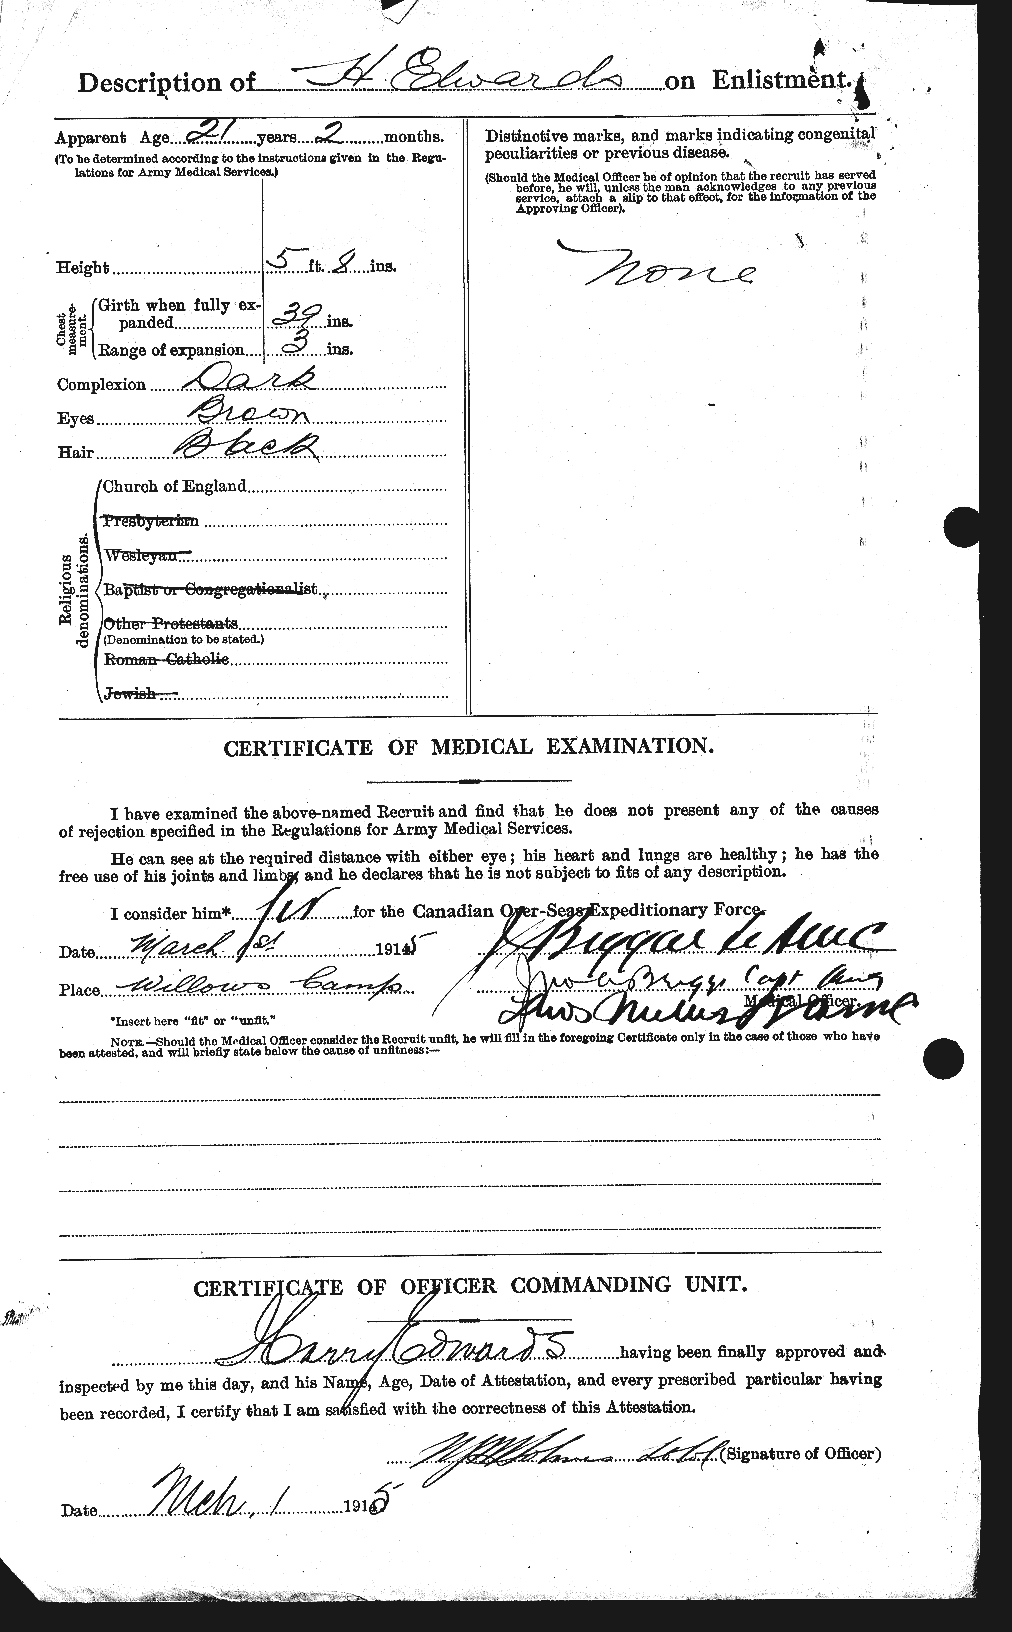 Dossiers du Personnel de la Première Guerre mondiale - CEC 309726b